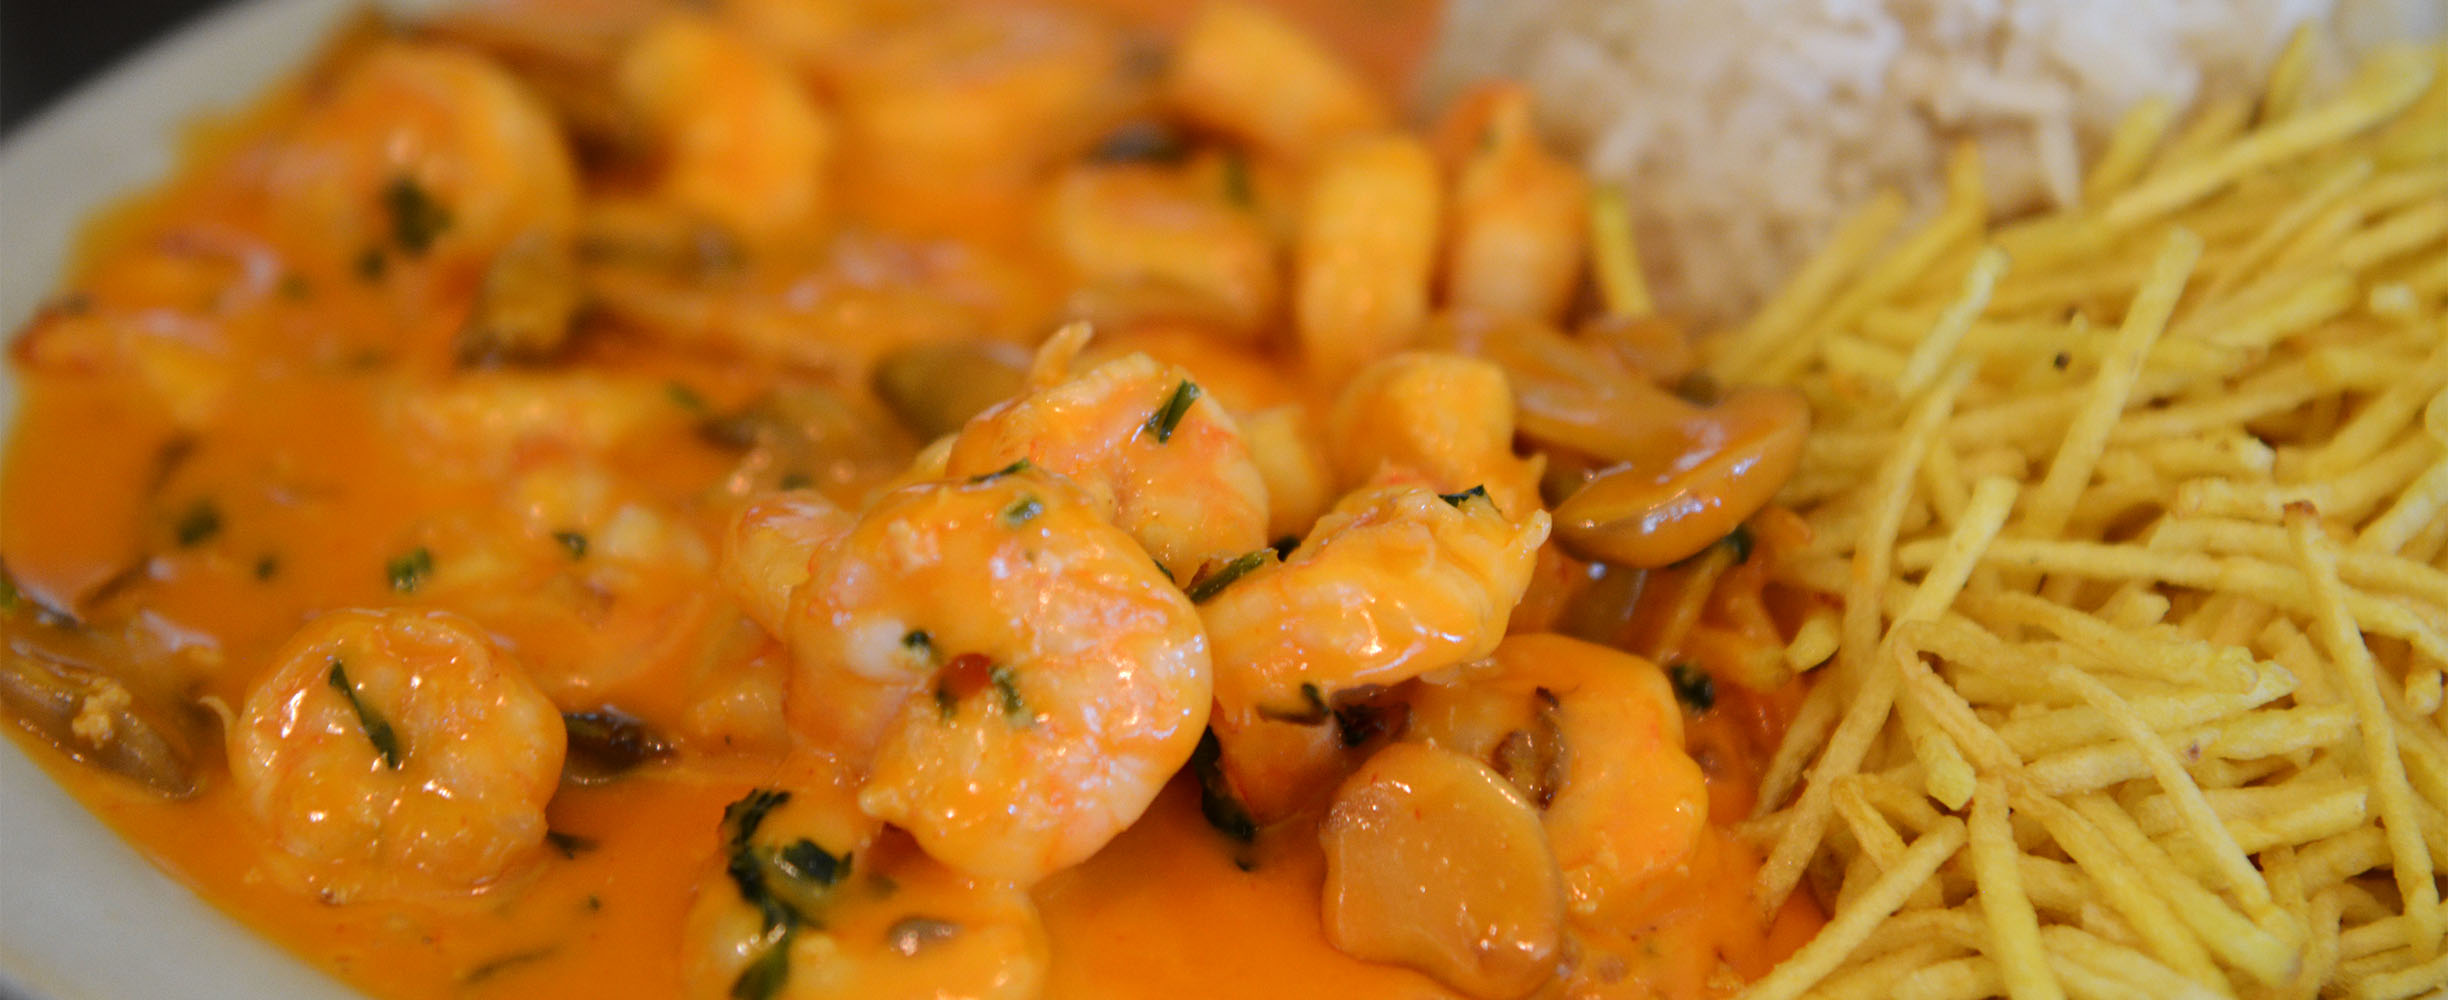 Delicious shrimps for Breakfast or Brunch! 